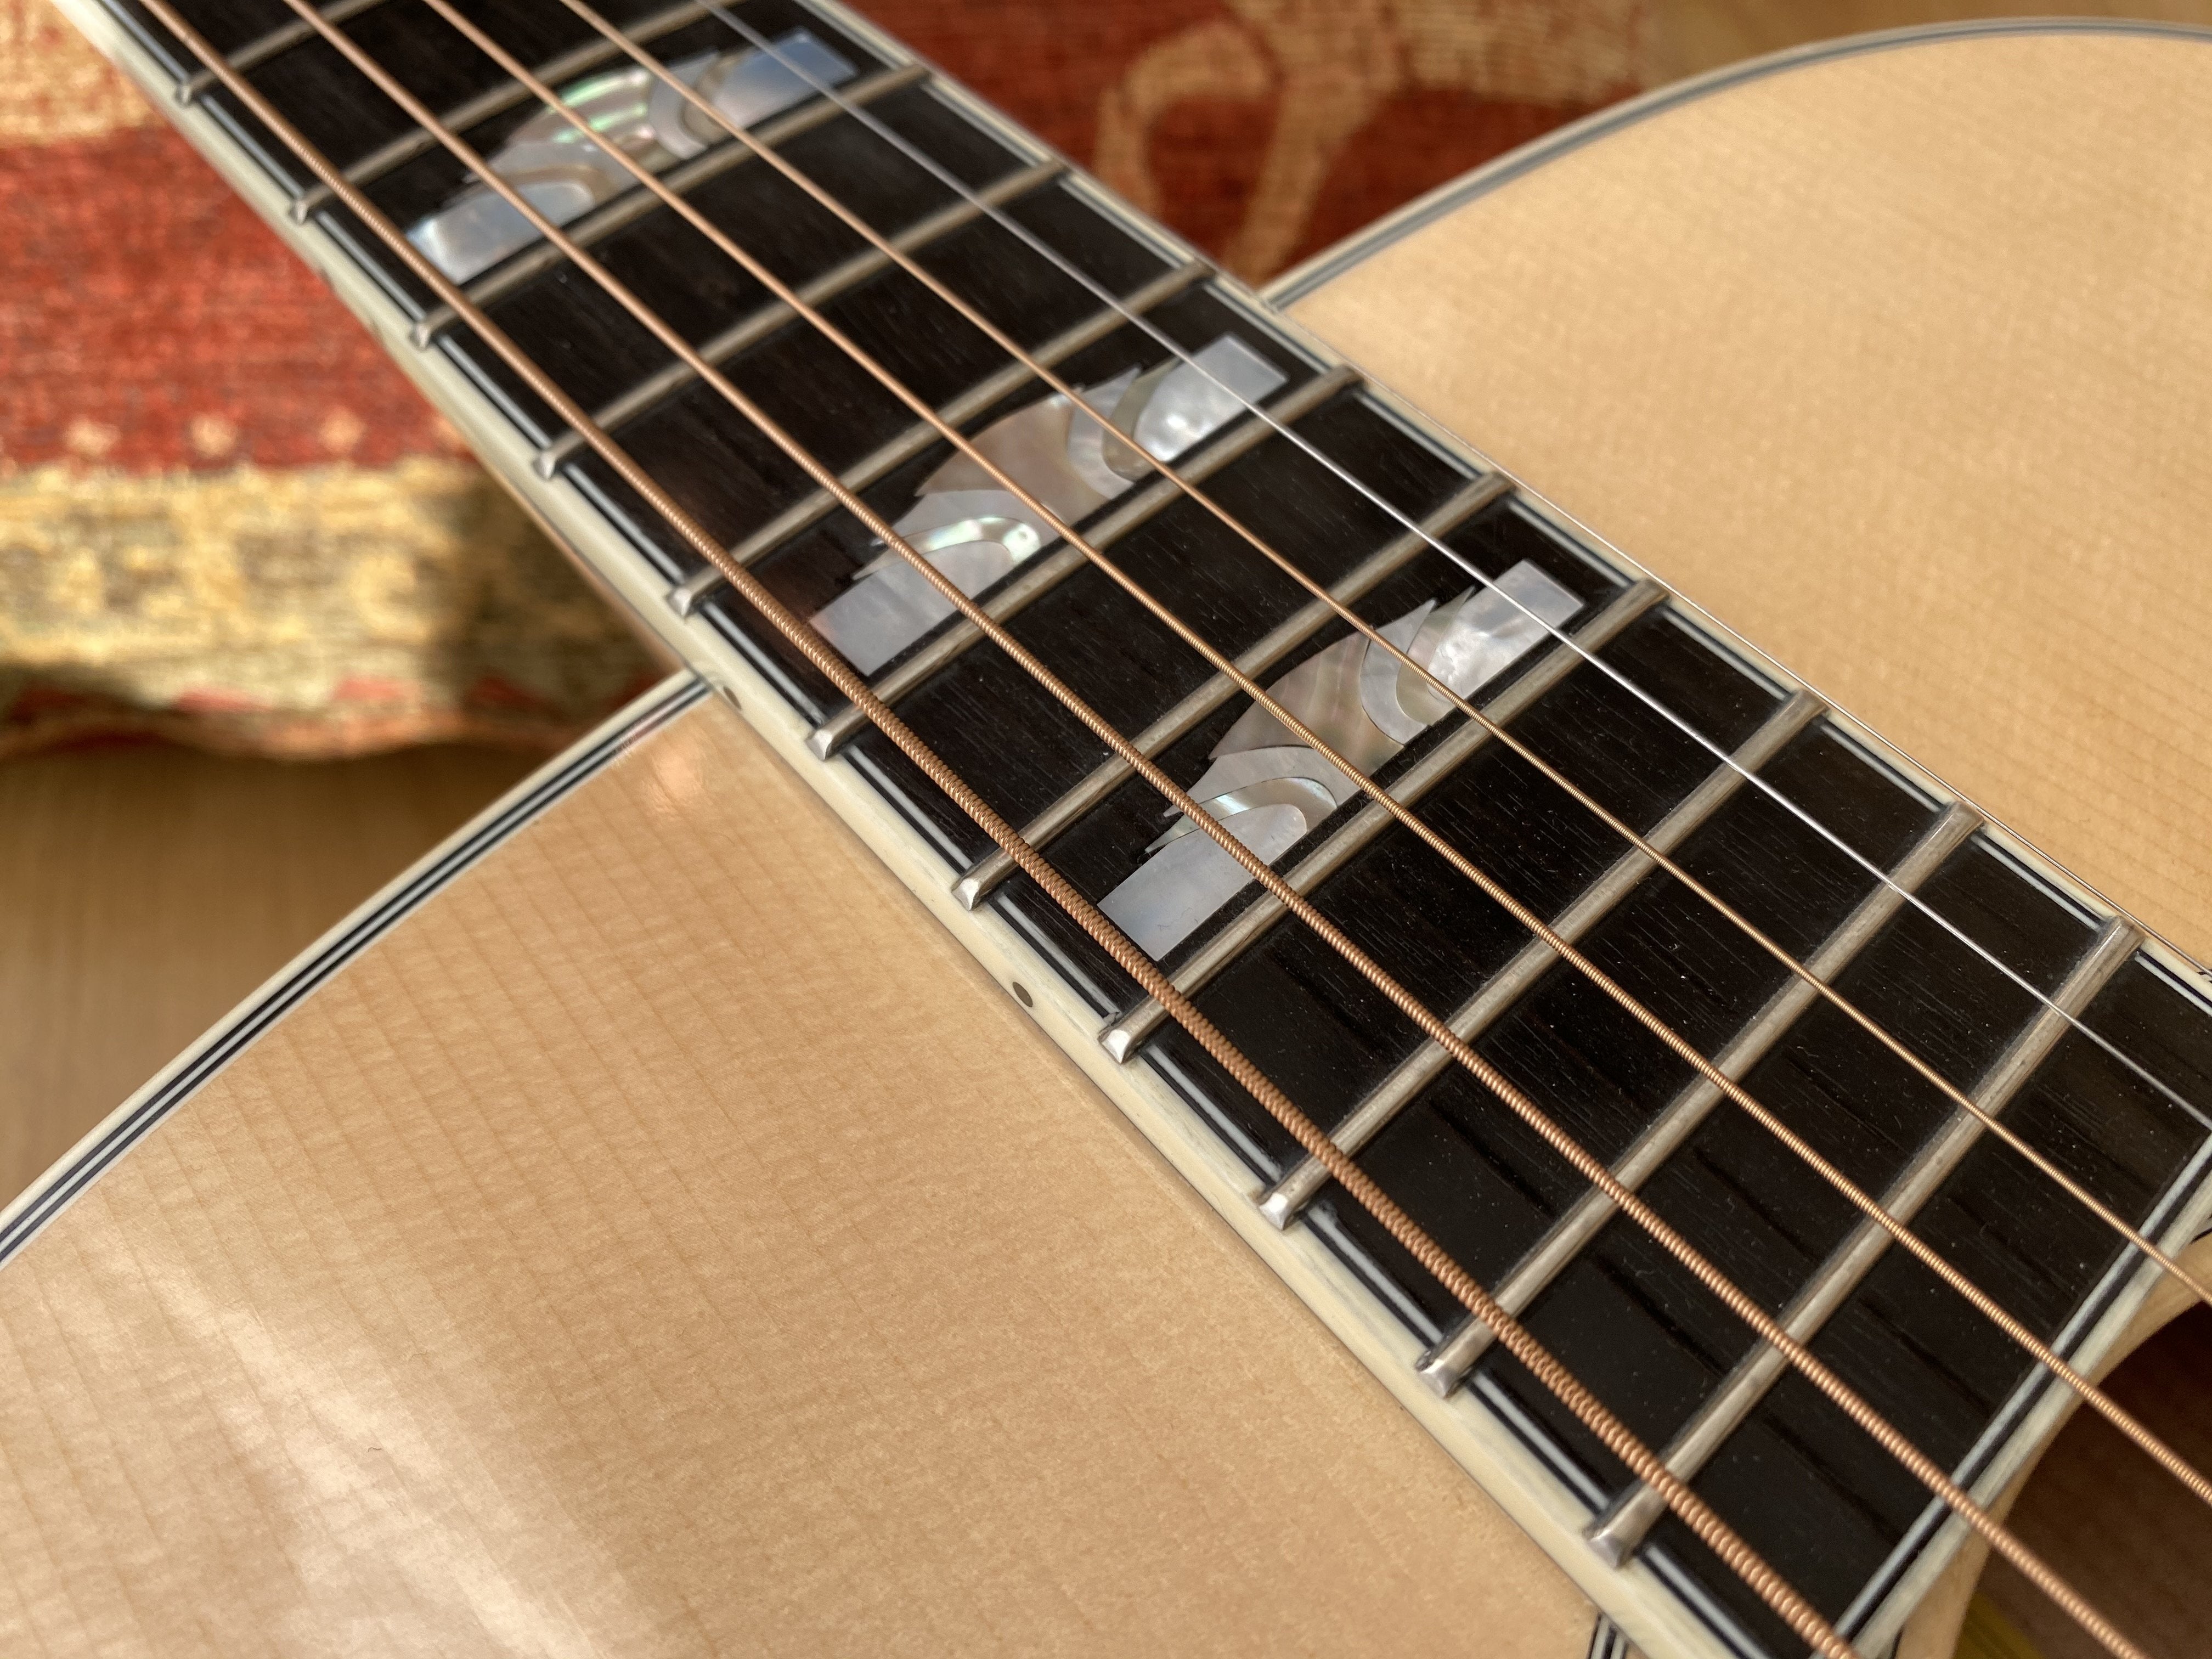 Eastman Eastman AC630L-BD Left Handed, Acoustic Guitar for sale at Richards Guitars.